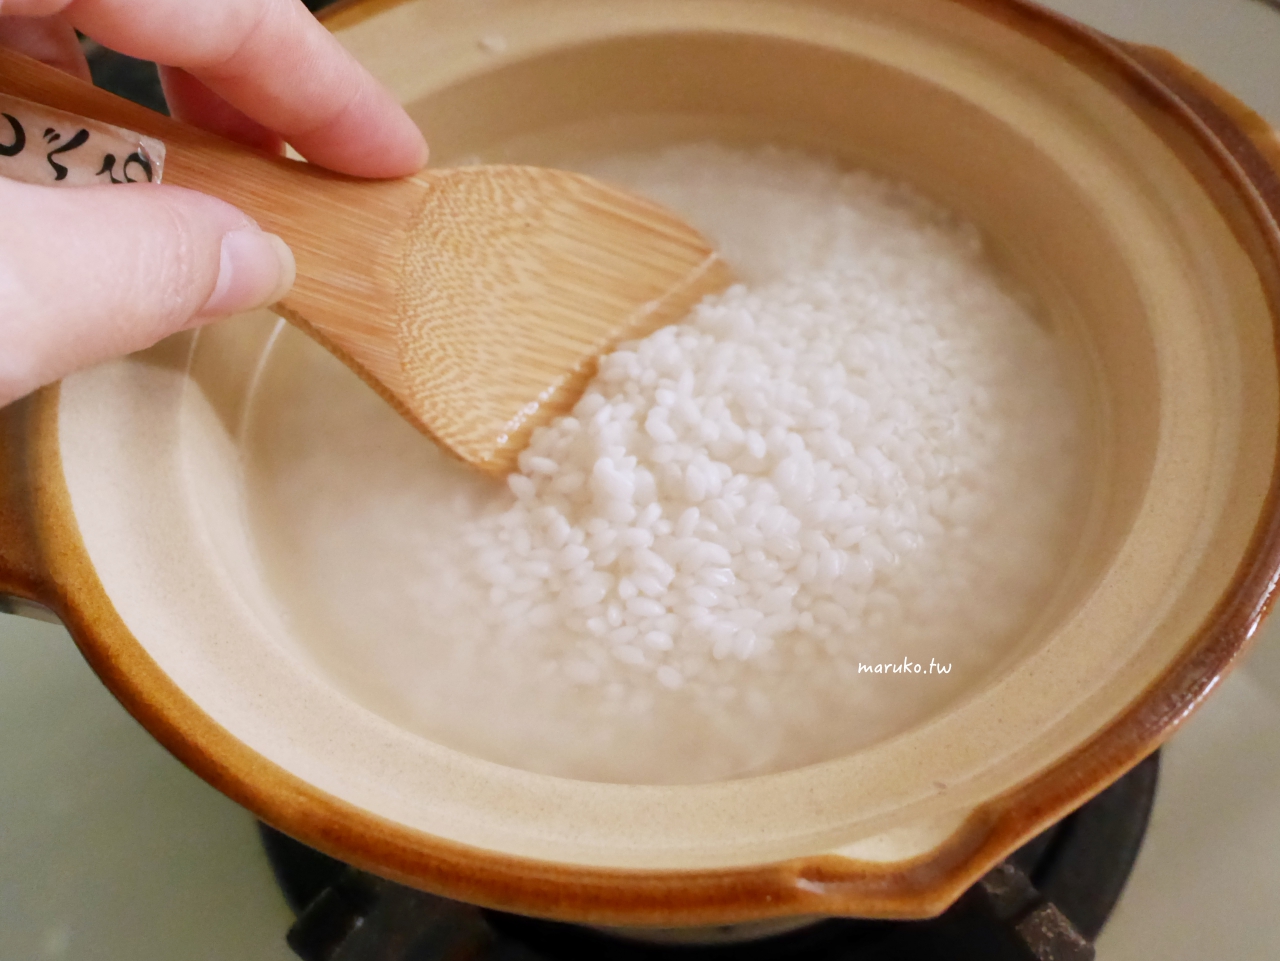 【食譜】土鍋炊飯 如何用土鍋煮出晶瑩透亮的白米飯 這樣做更好吃 @Maruko與美食有個約會